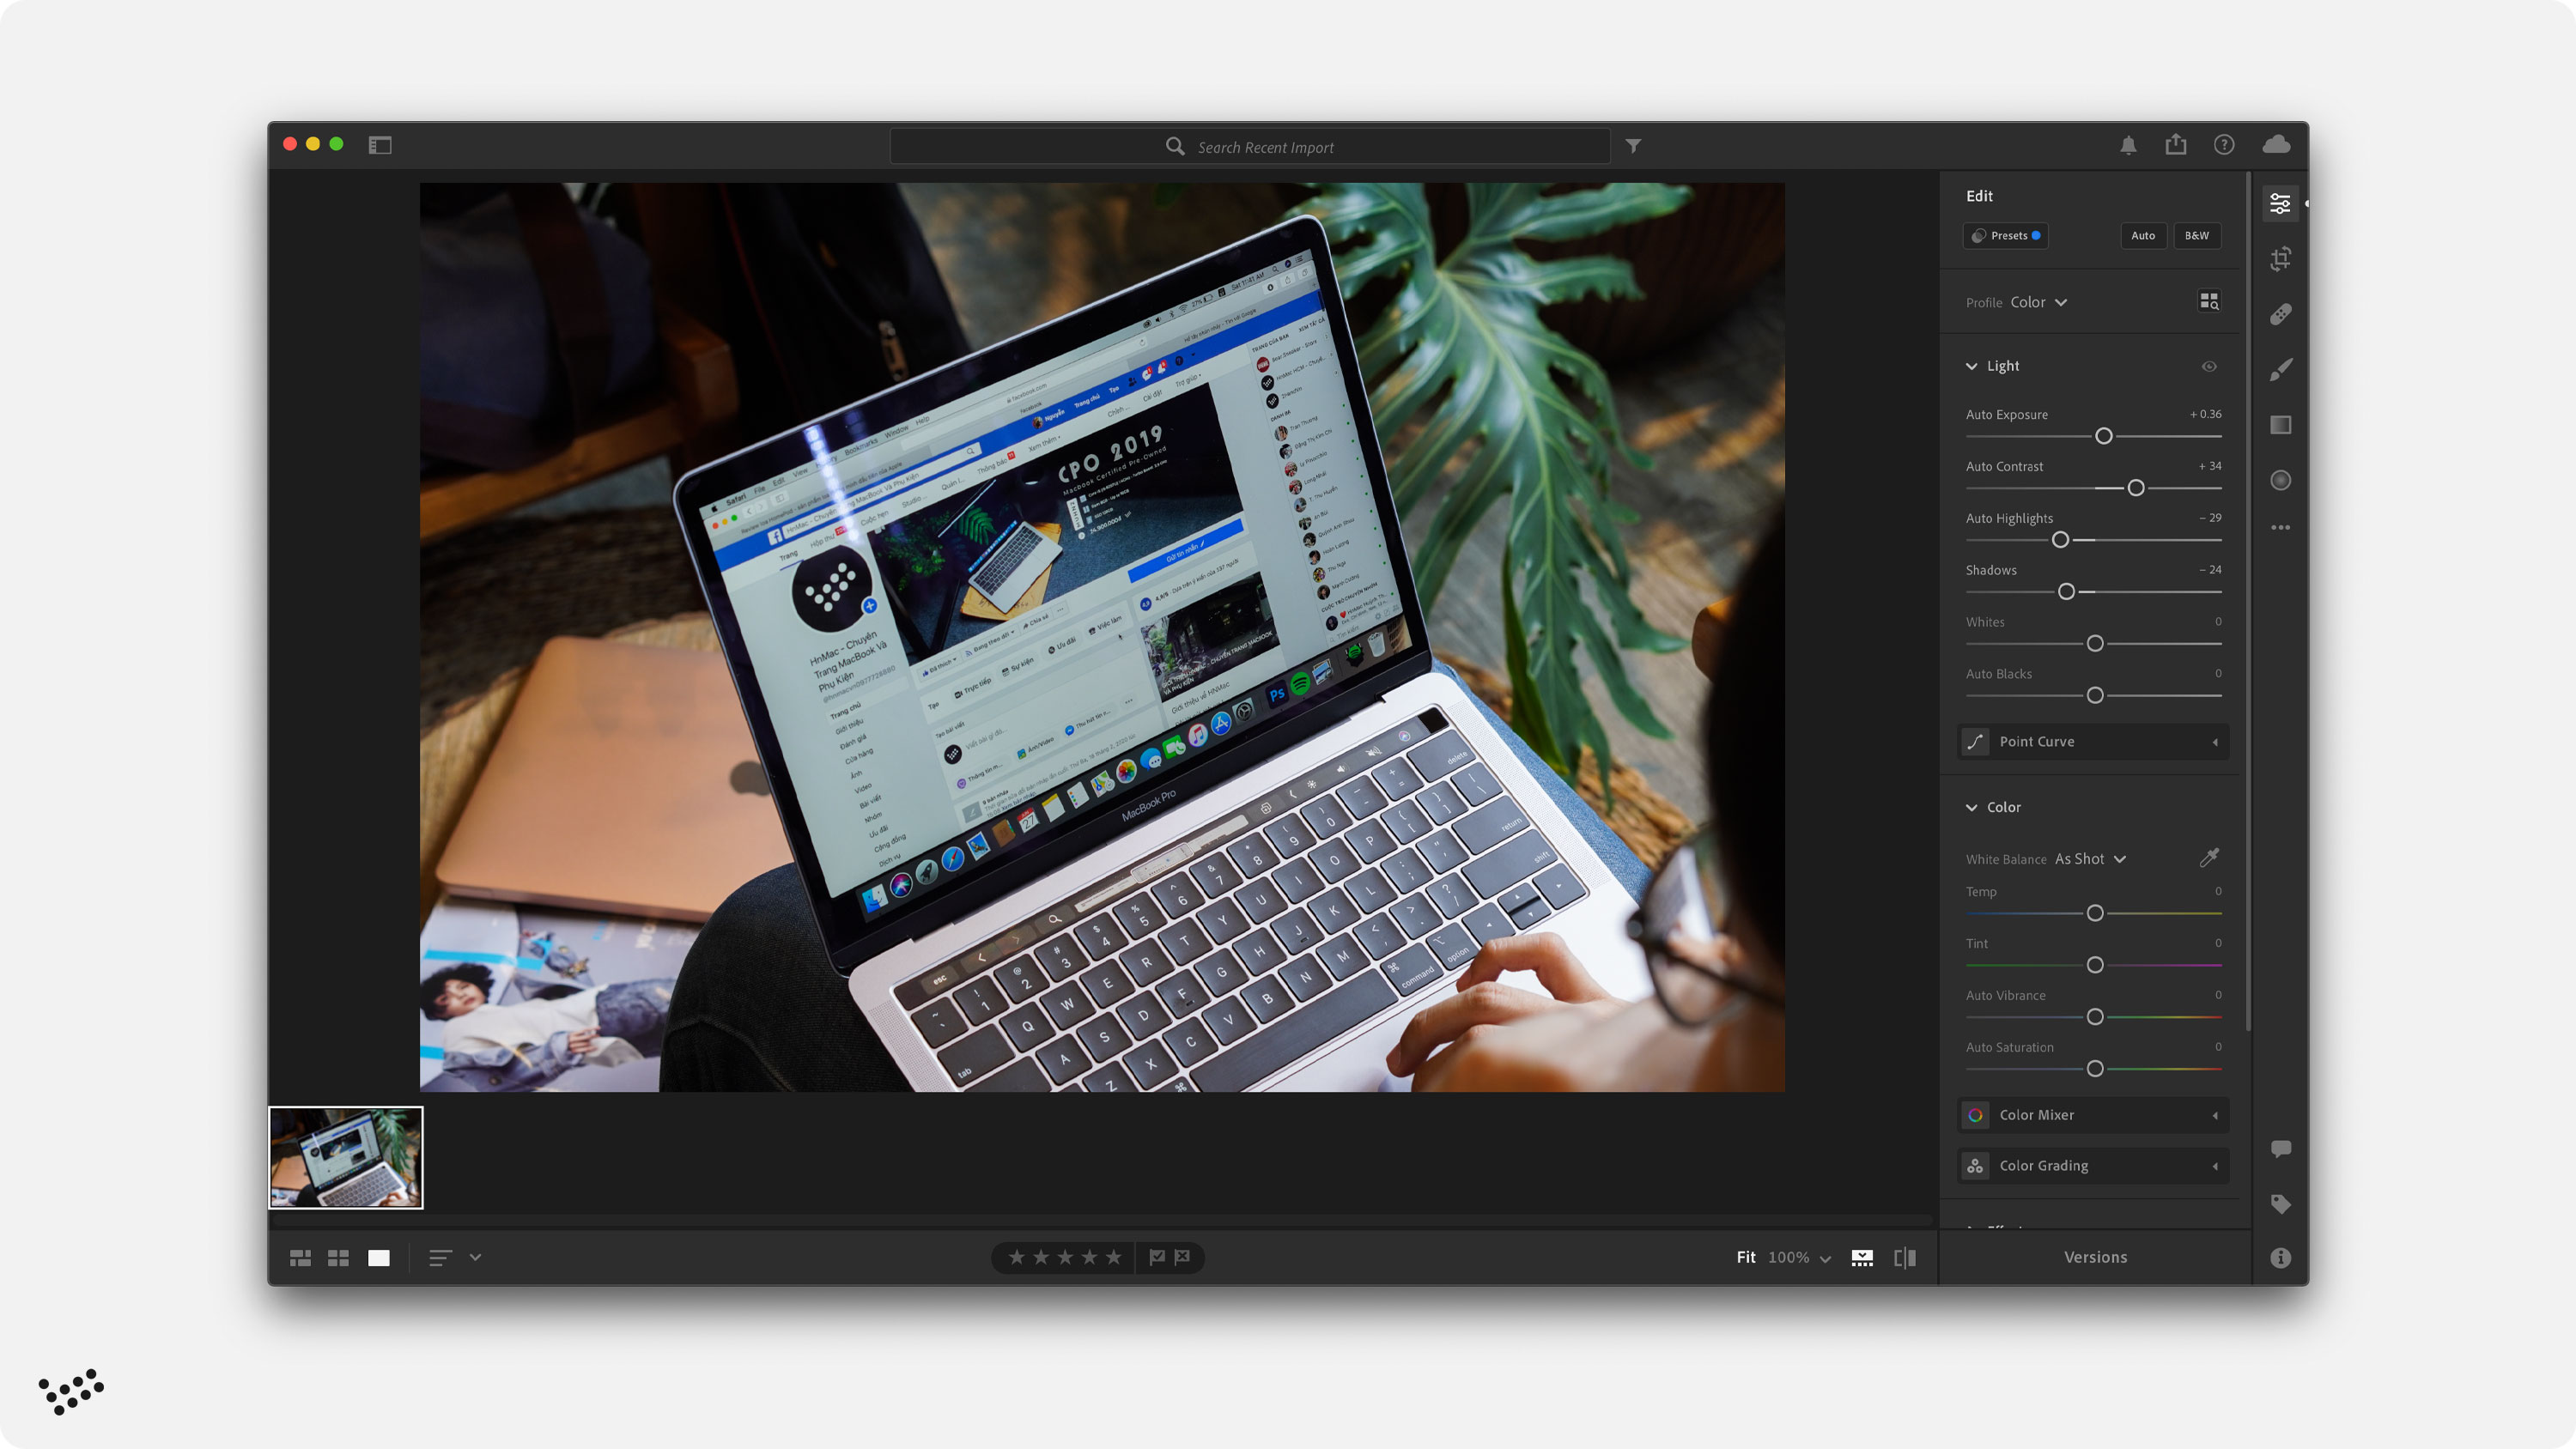 Chỉnh ảnh trên MacBook đang trở thành một xu hướng mới trong thế giới nhiếp ảnh. Với chỉnh sửa mạnh mẽ và đơn giản bằng các phần mềm chuyên nghiệp trên Macbook, bạn có thể biến bức ảnh của mình thành một tác phẩm nghệ thuật đẹp mắt. Nhanh chóng tải ảnh của bạn lên Macbook bằng cách sử dụng máy ảnh hoặc điện thoại thông minh và bắt đầu quá trình chỉnh sửa của bạn trên MacBook ngay bây giờ.